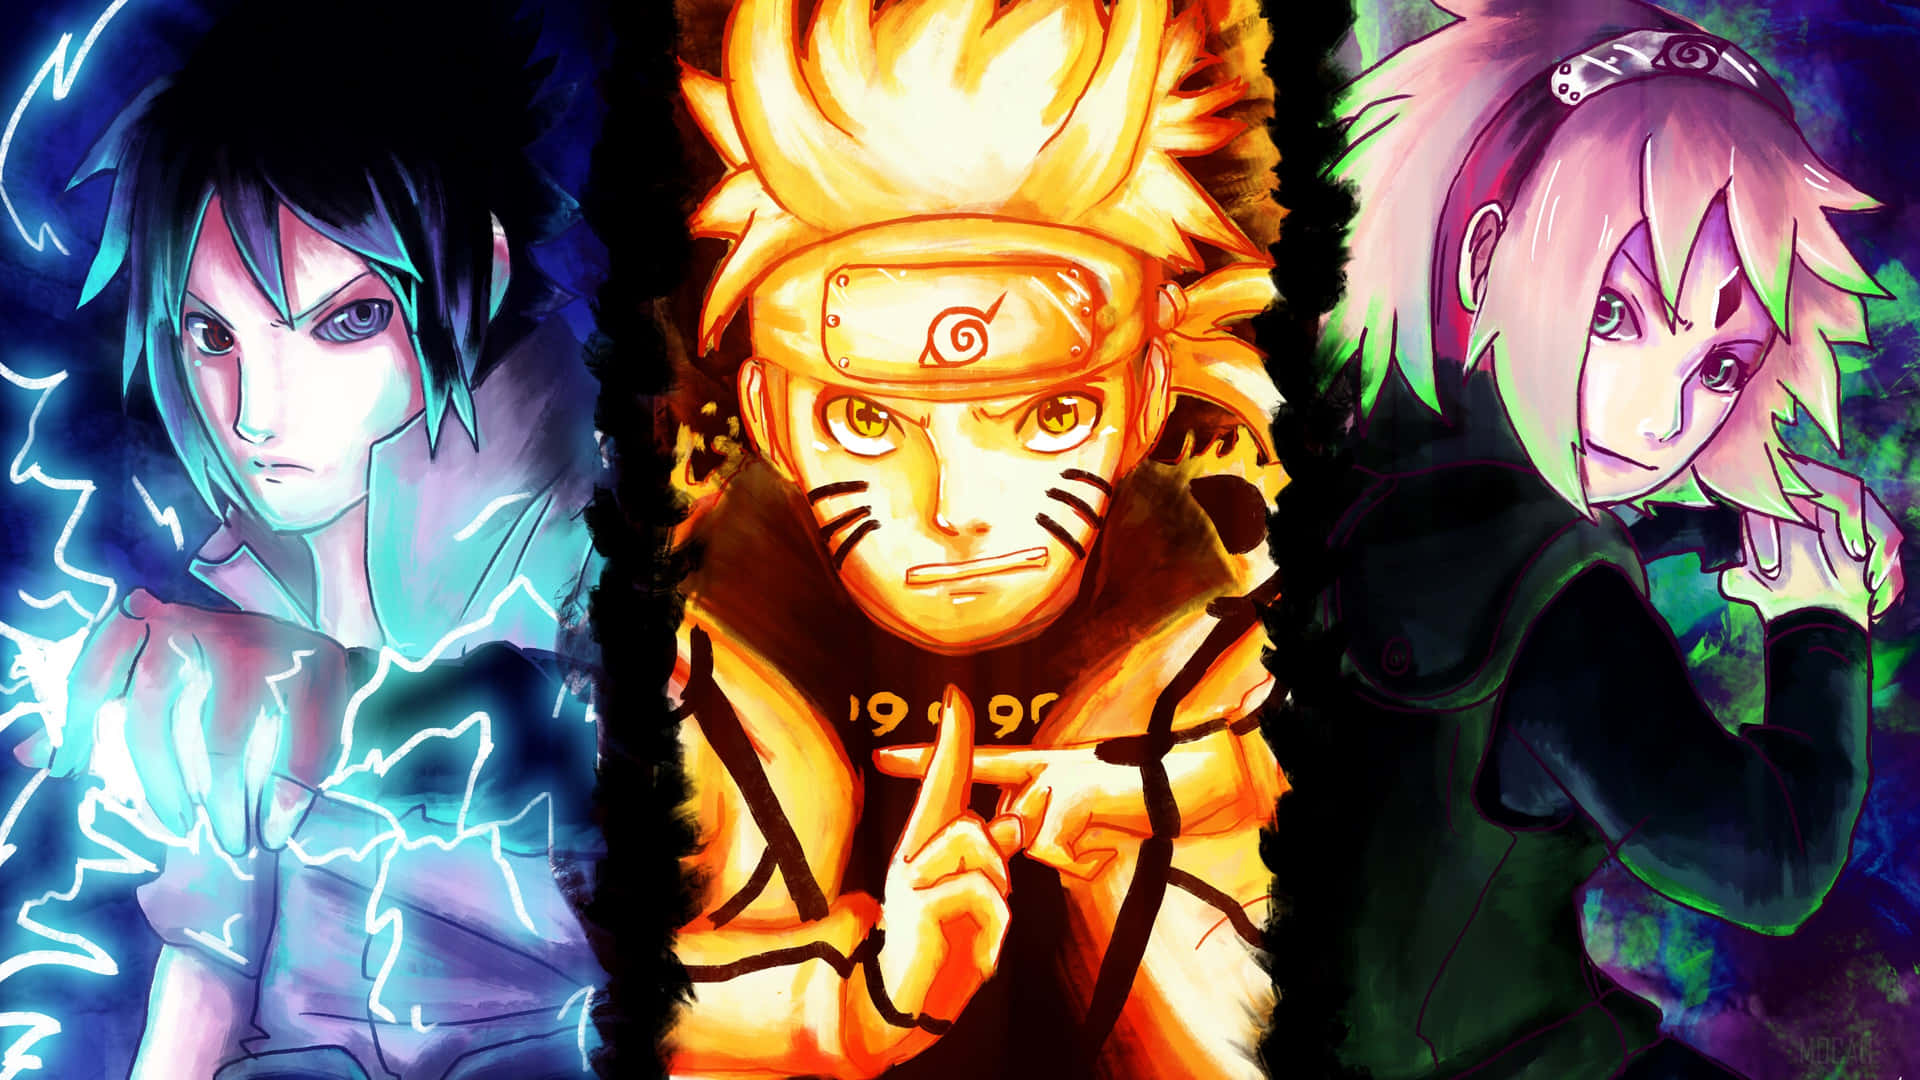 Bạn là fan của Naruto Uzumaki? Hãy tải ngay hình nền điện thoại HD của Naruto để tận hưởng màn hình sáng, sắc nét và đầy sức sống. Với chất lượng hình ảnh cao cấp, bạn sẽ cảm thấy thích thú khi nhìn vào chi tiết từng đường nét và màu sắc tuyệt đẹp trên được hiển thị một cách hoàn hảo.